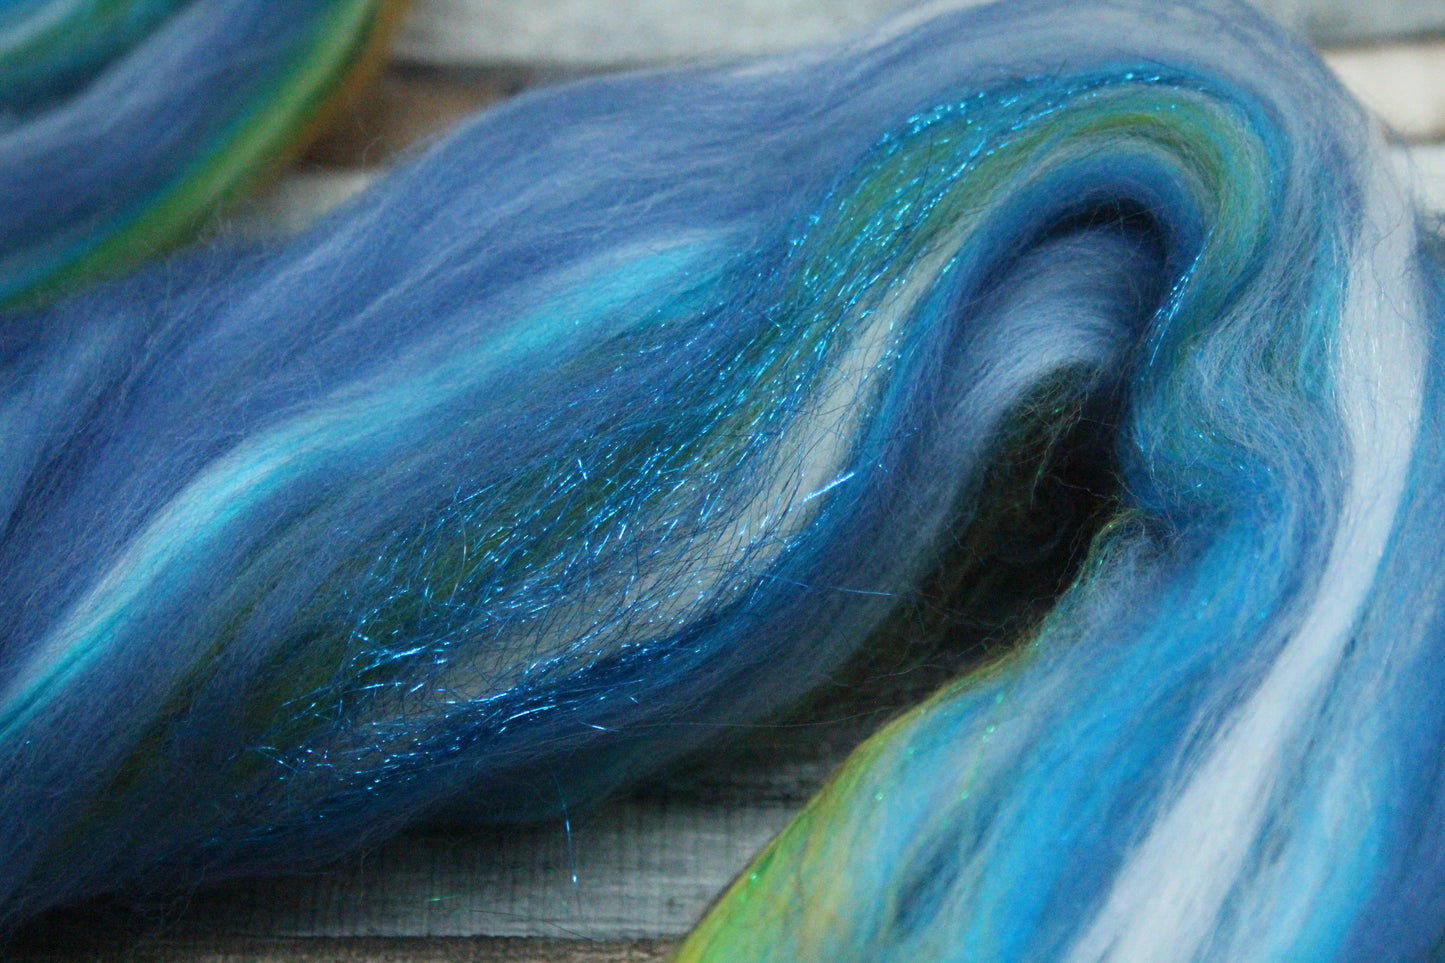 Merino Wool Blend - Brown Green Blue - 42 grams / 1.4 oz  - Fibre for felting, weaving or spinning